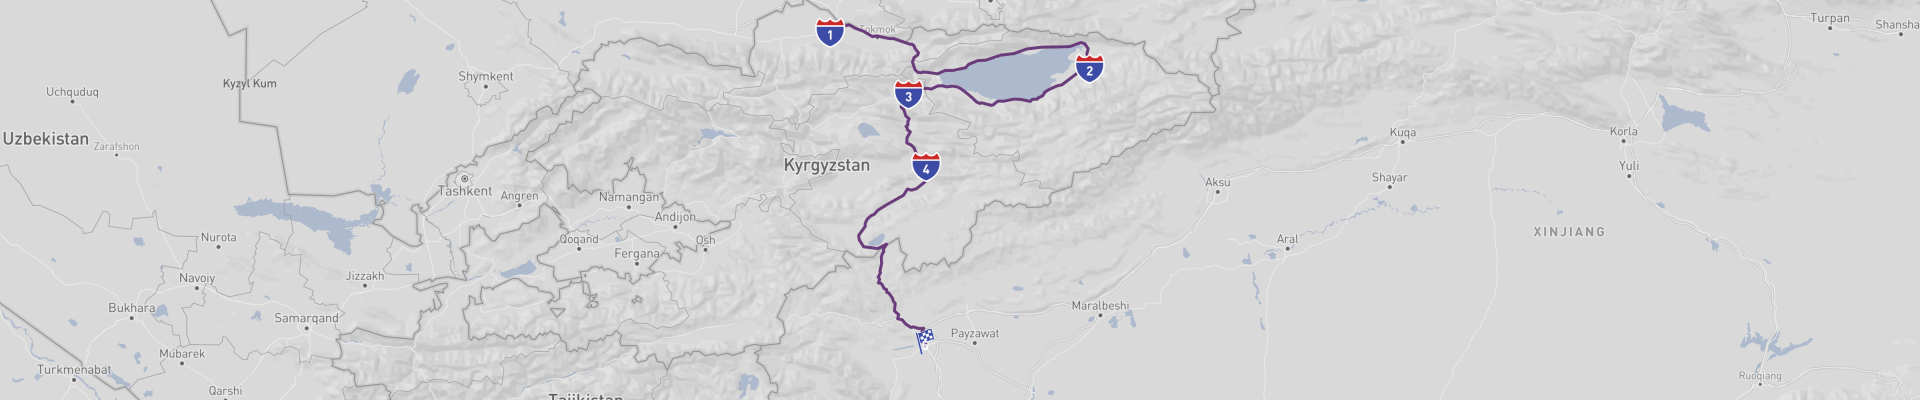 Bishkek to Kashgar Road Trip